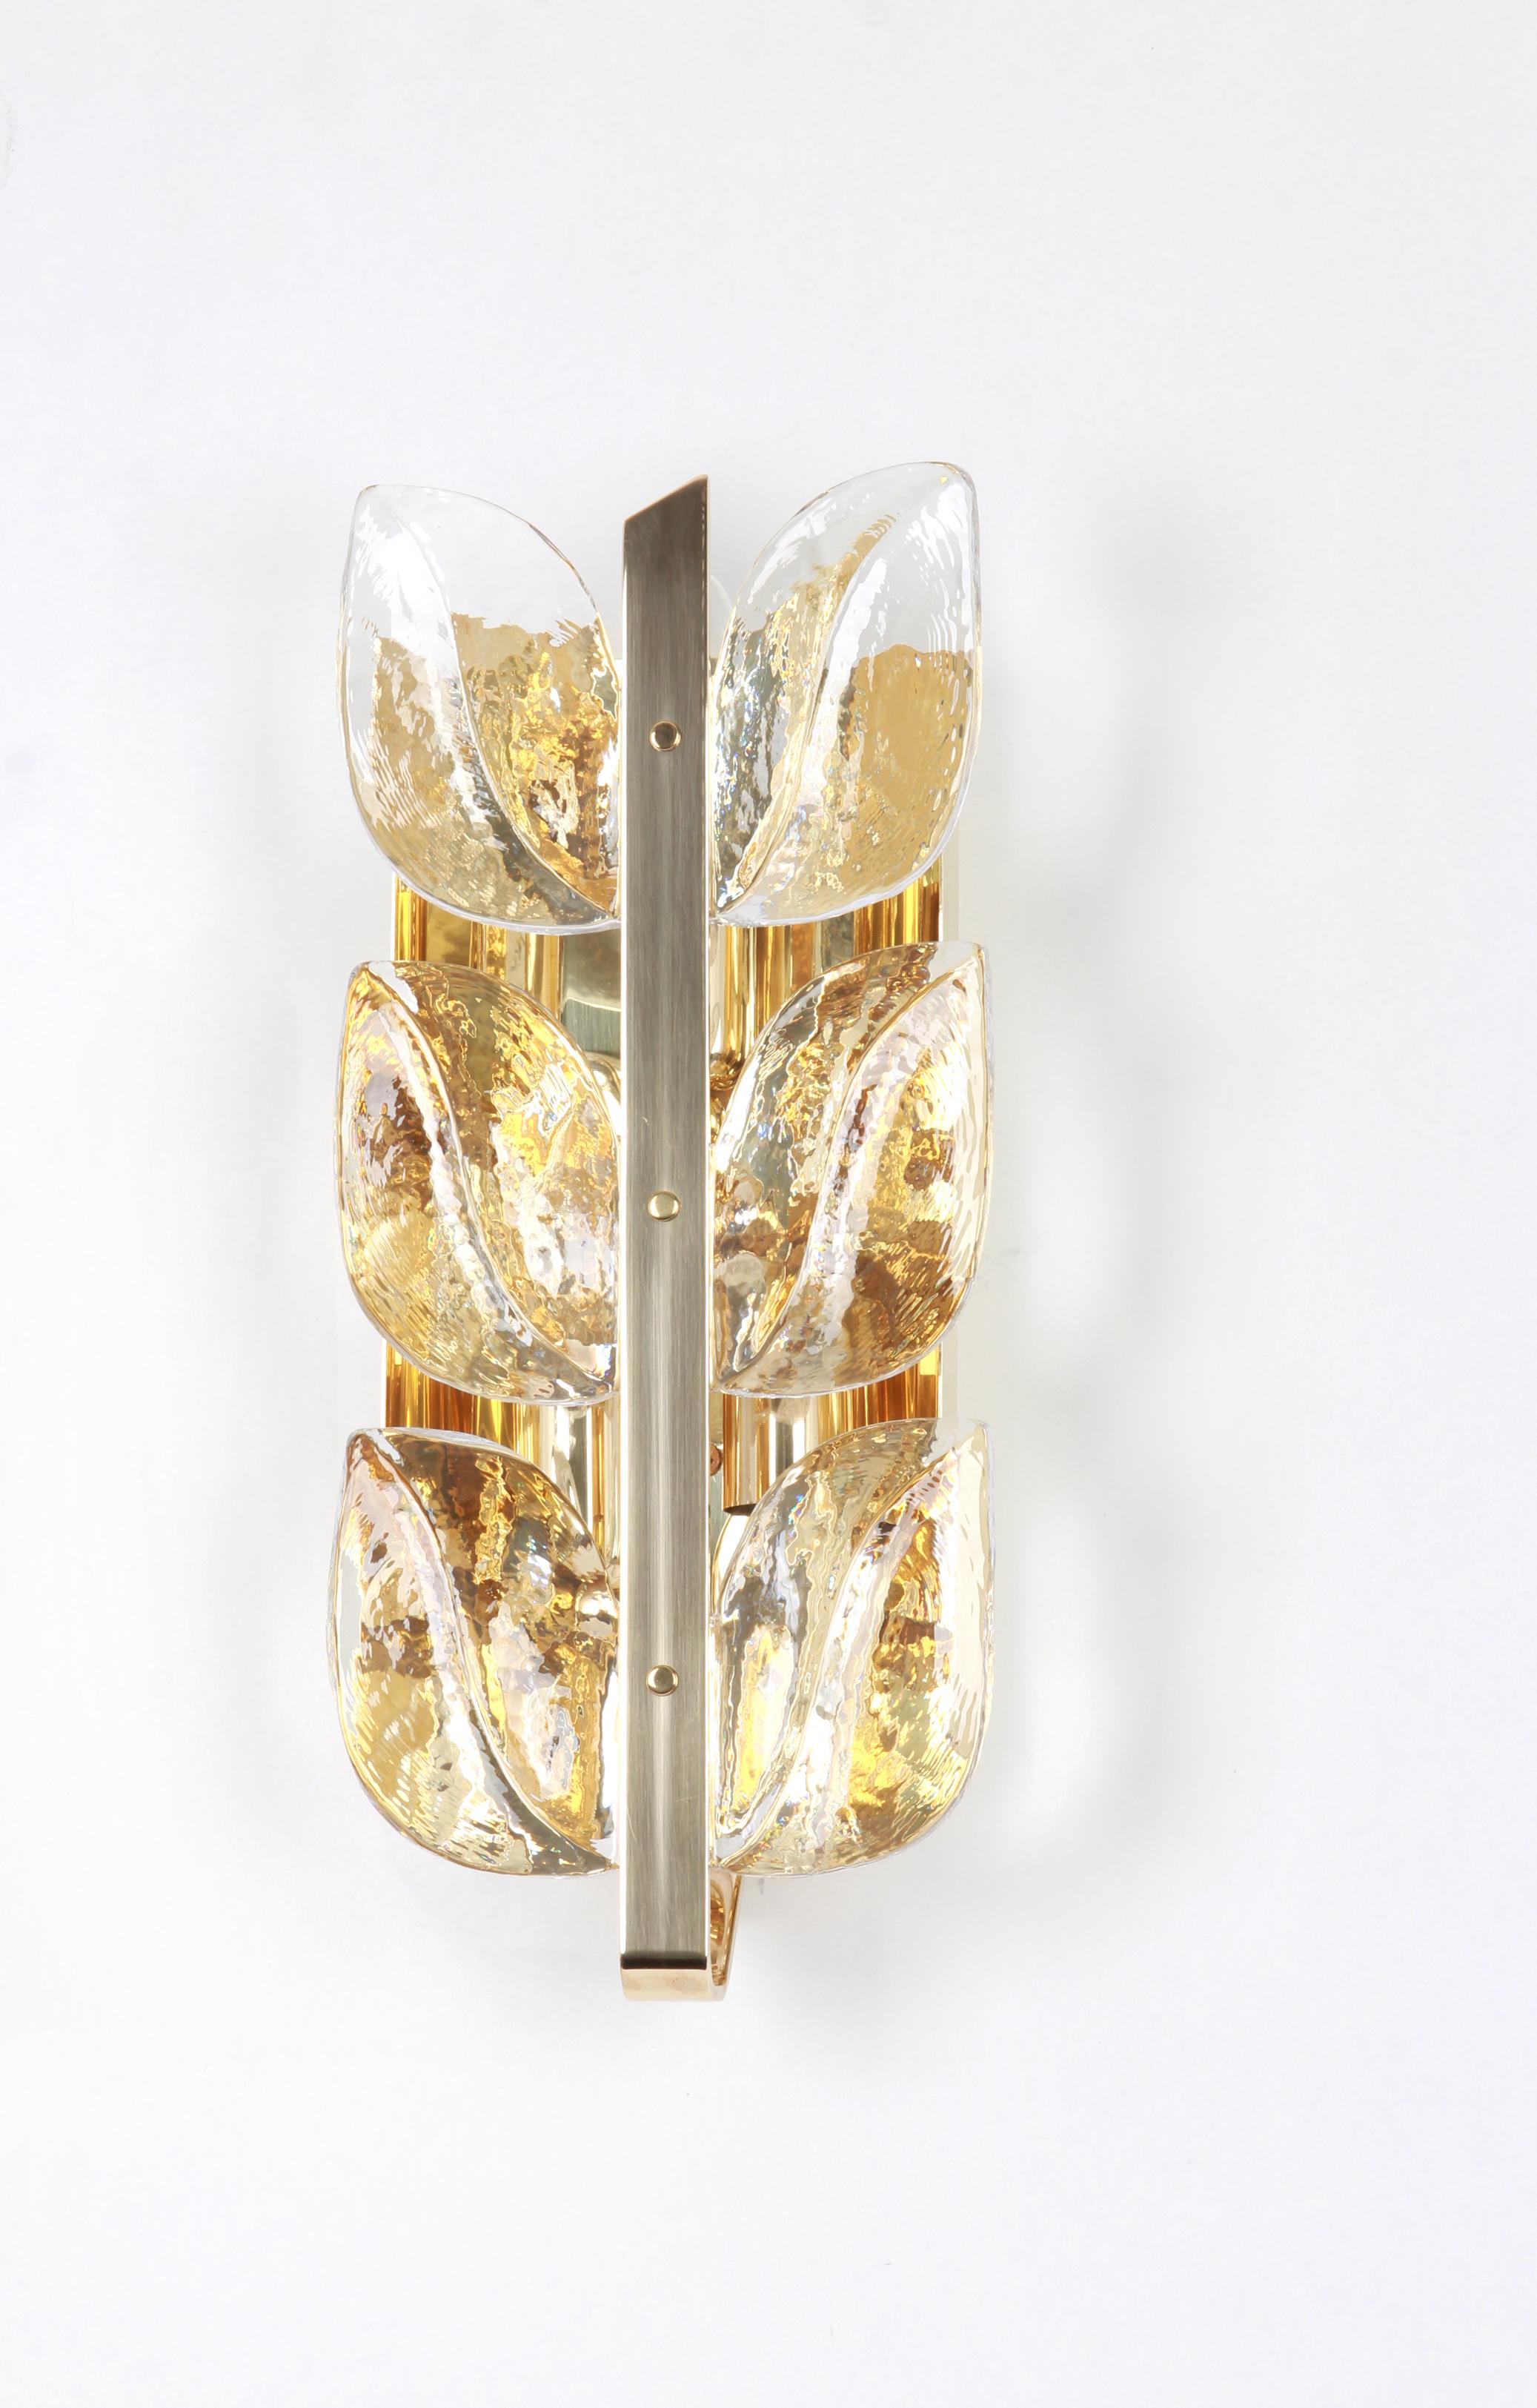 Wunderschönes Paar Wandleuchter aus der Mitte des Jahrhunderts mit sechs Murano-Gläsern auf einem vergoldeten Messingrahmen, hergestellt von Kalmar, Österreich, ca. 1960-1969.
Jede Leuchte benötigt drei kleine E14-Birnen.
Glühbirnen sind nicht